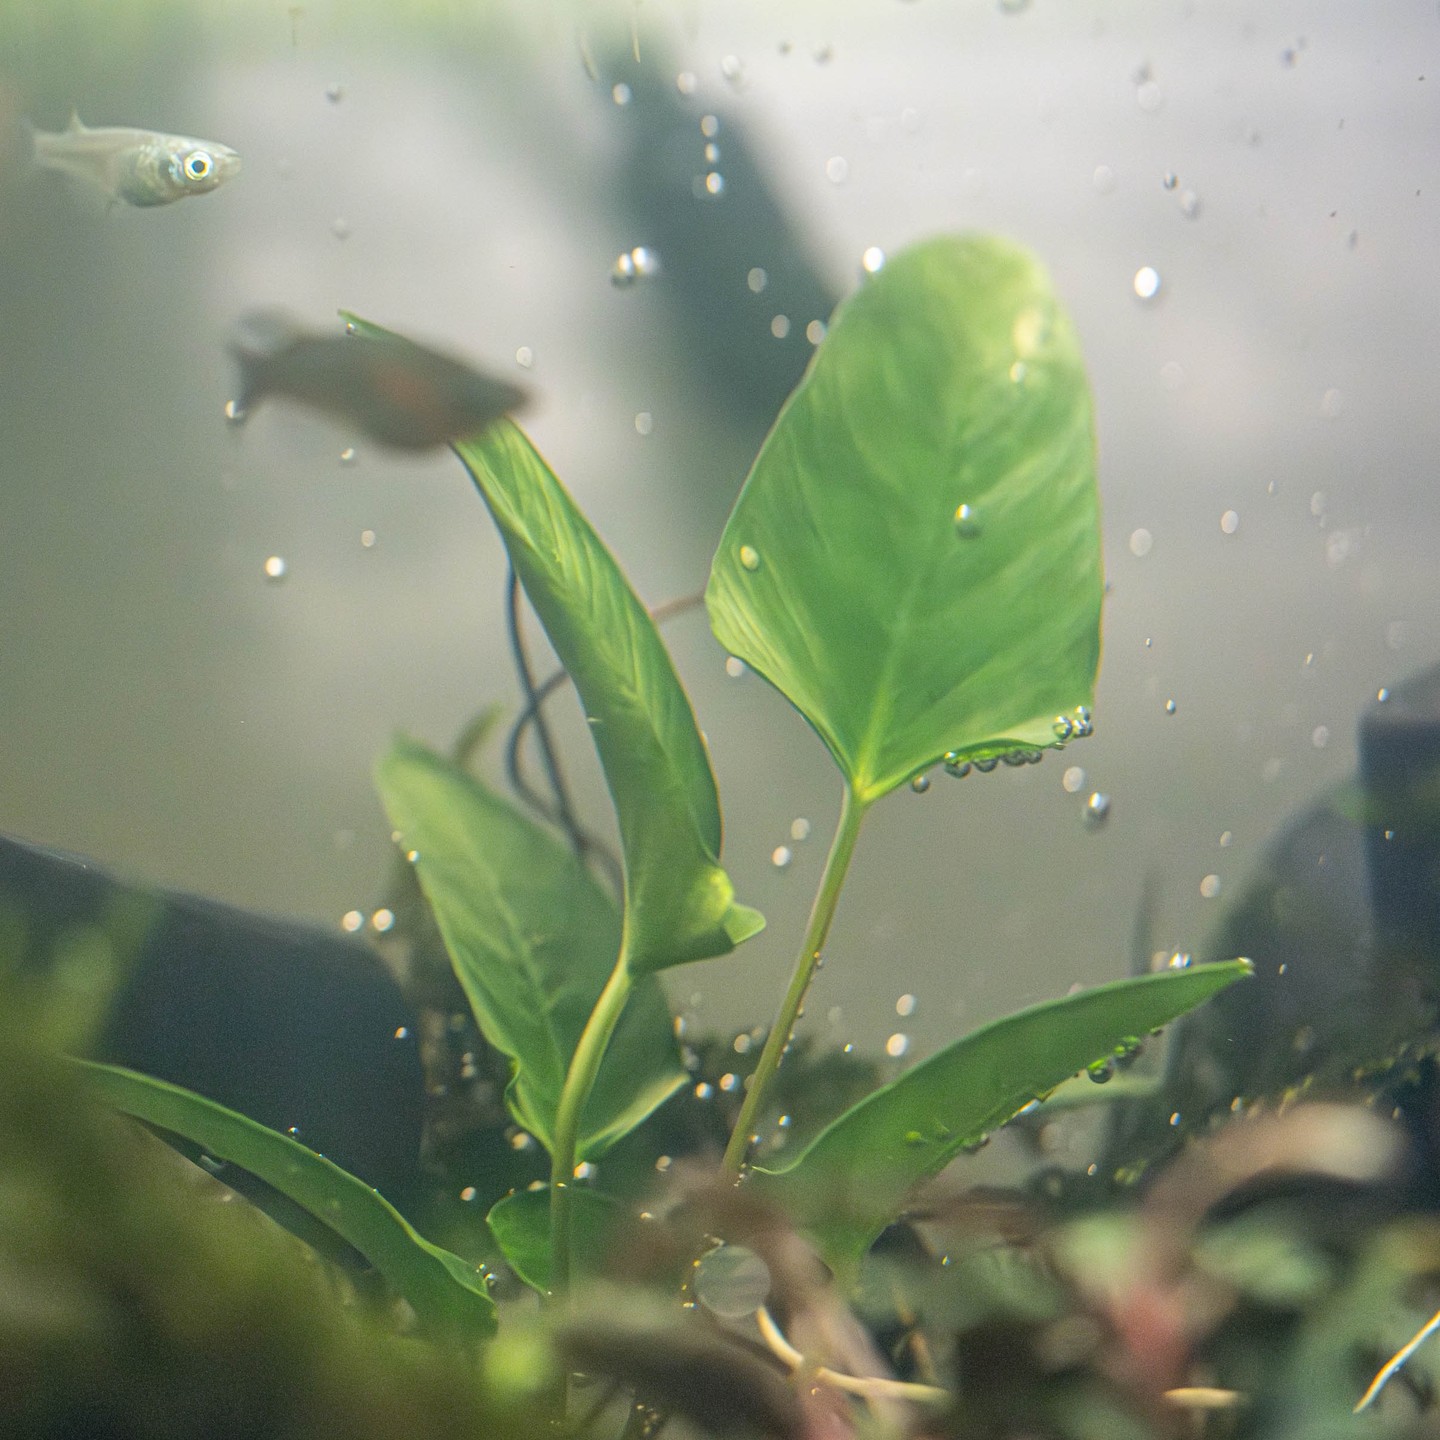 New Aquarium Plant - Anubias gracilis